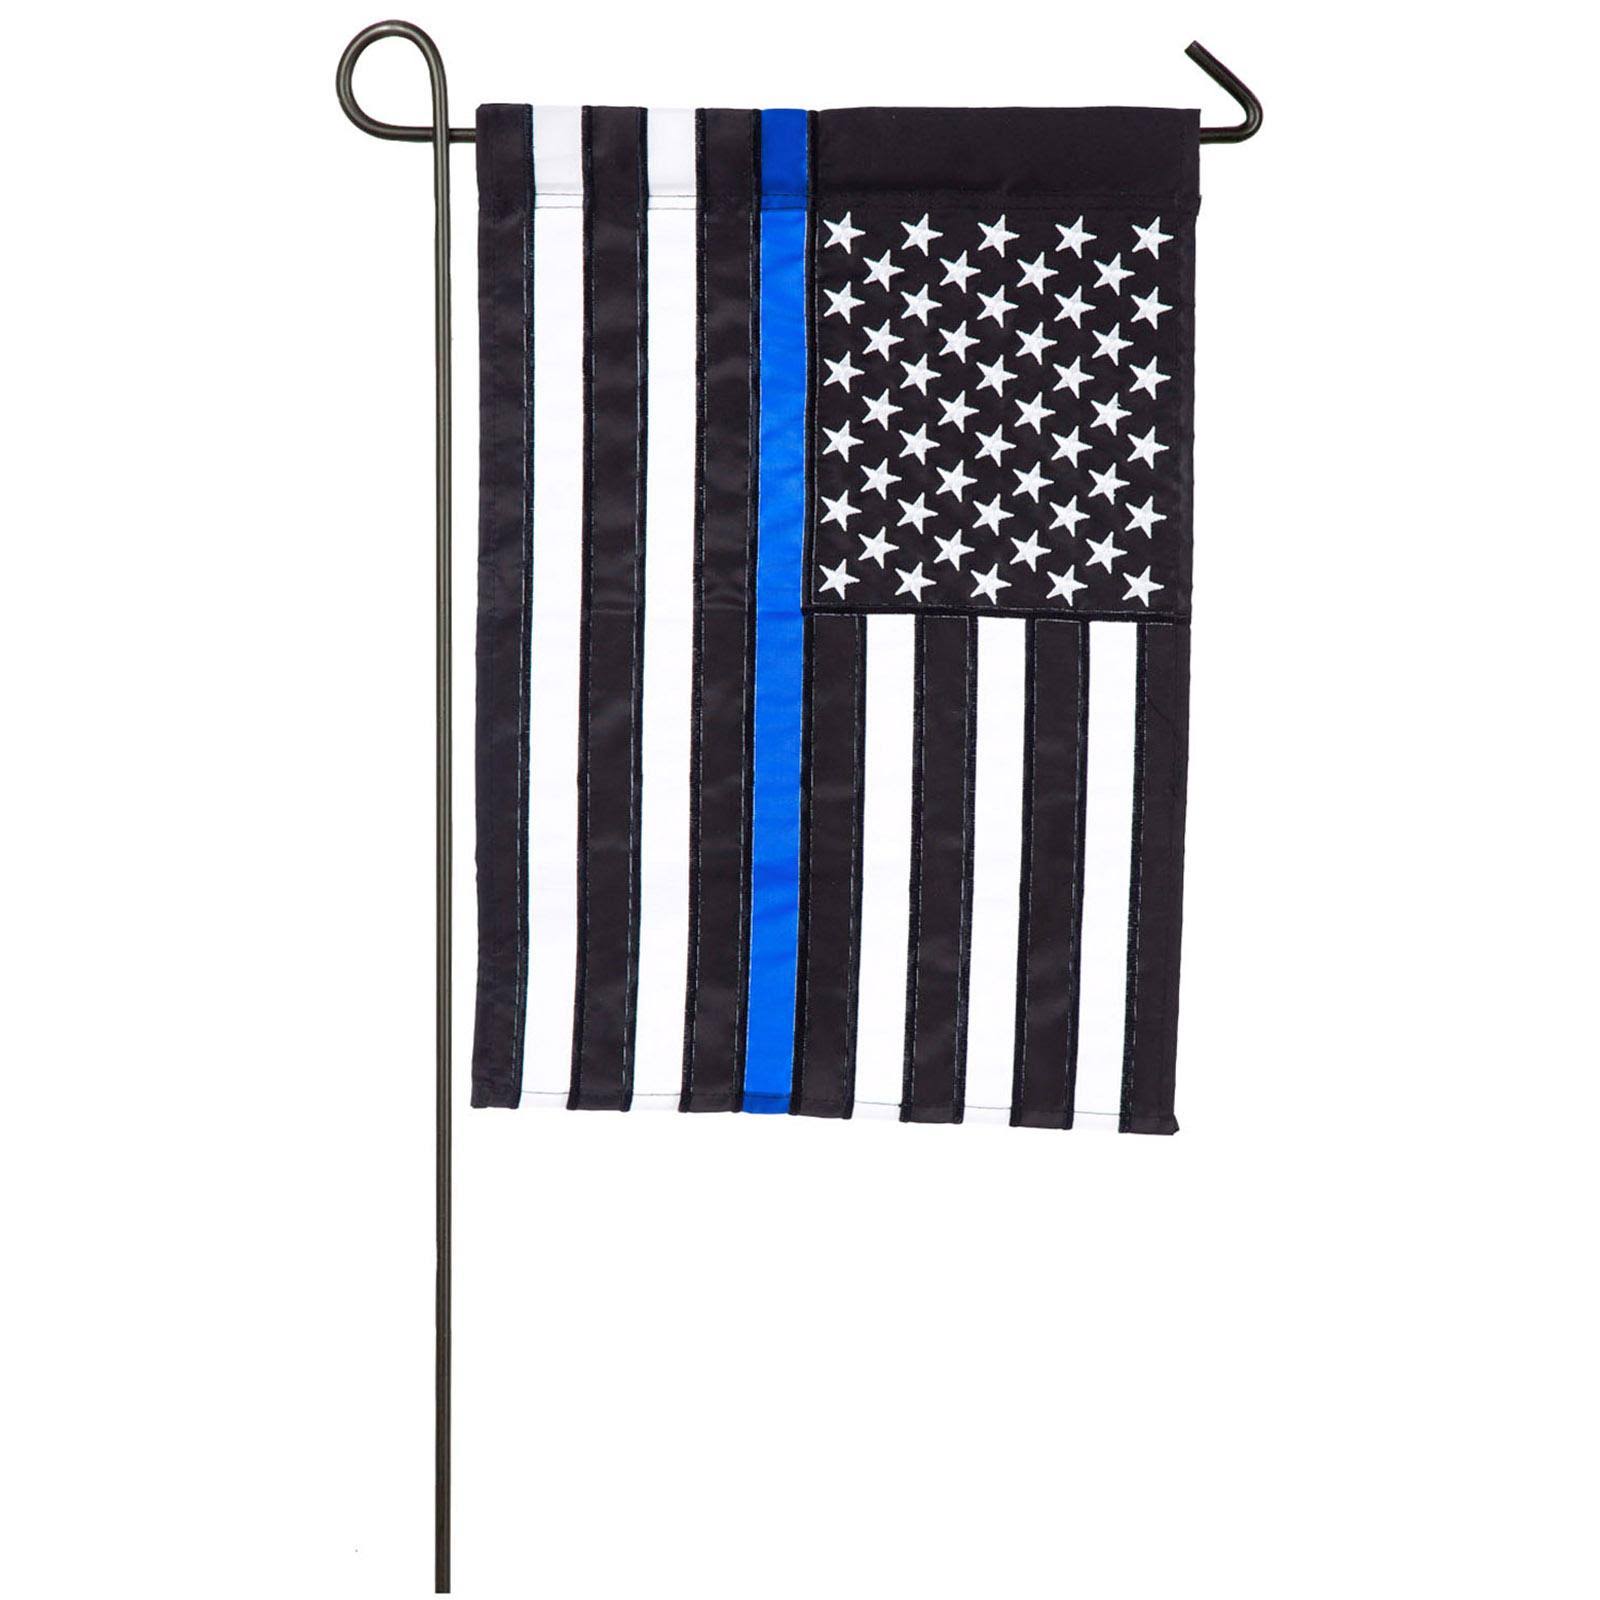 Evergreen Thin Blue Line Police Applique Garden Flag - 12.5x18"